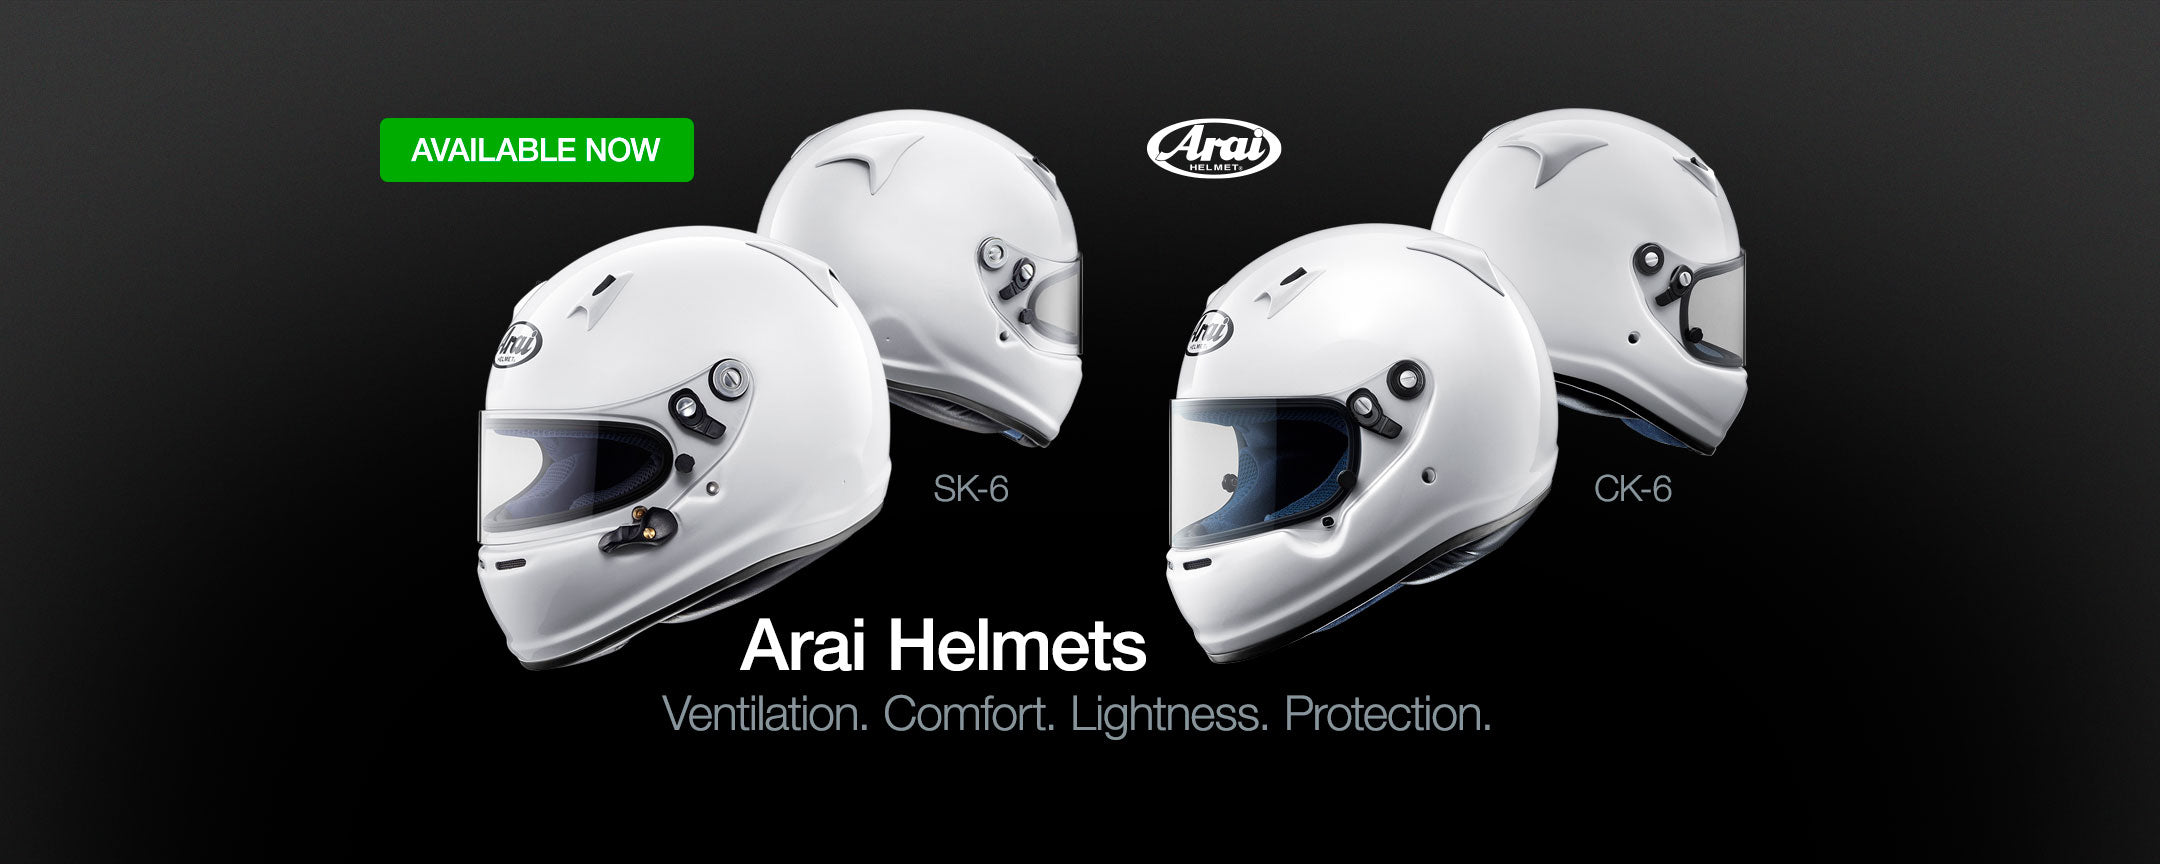 Arai Helmets for karting. Arai SK-6. Arai CK-6